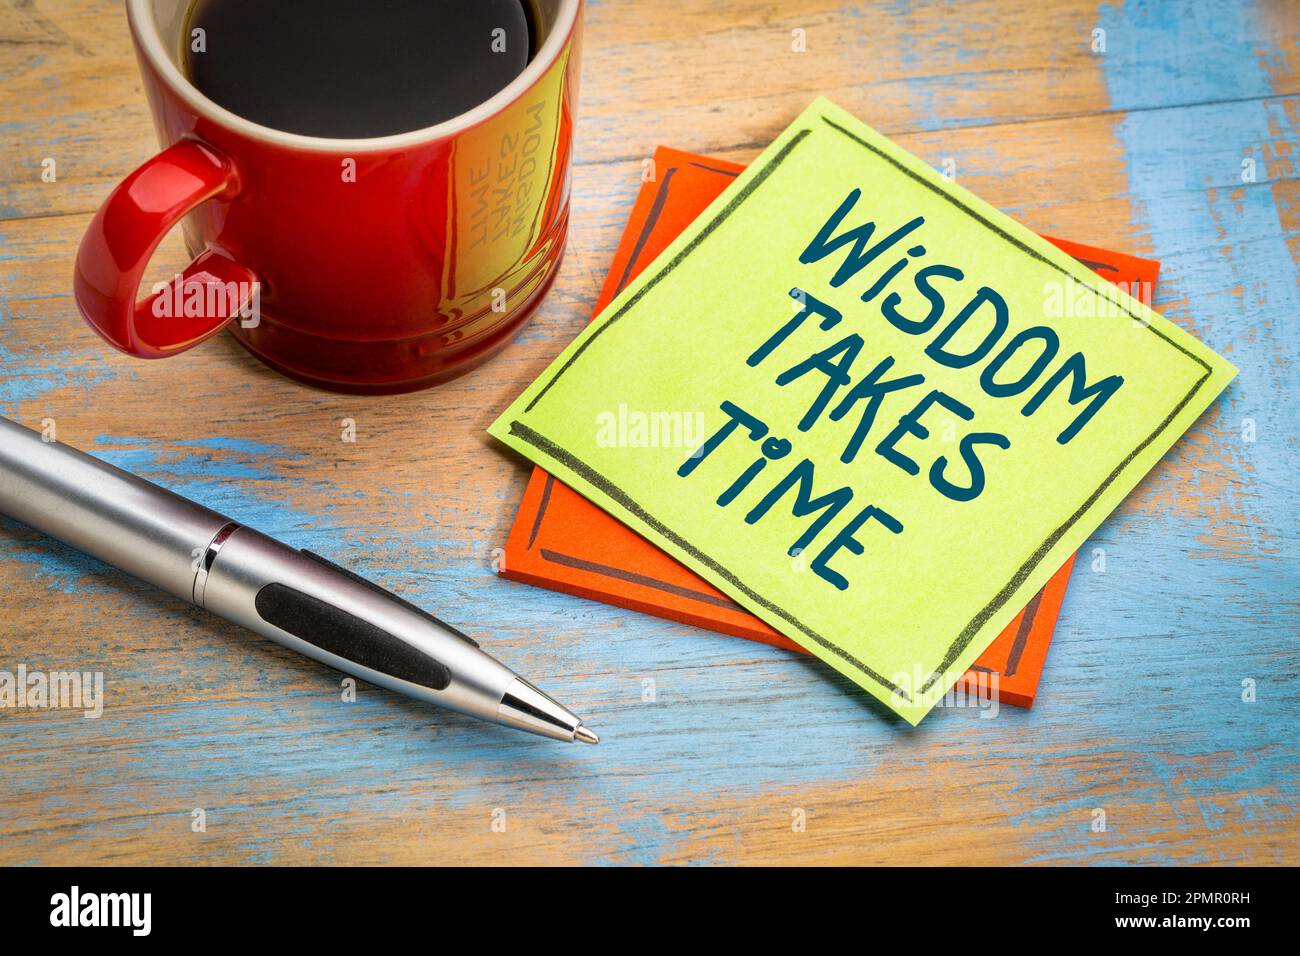 La saggezza richiede tempo. Nota di promemoria con una tazza di caffè. Rimanere pazienti e impegnati nella ricerca della conoscenza e della saggezza. Foto Stock